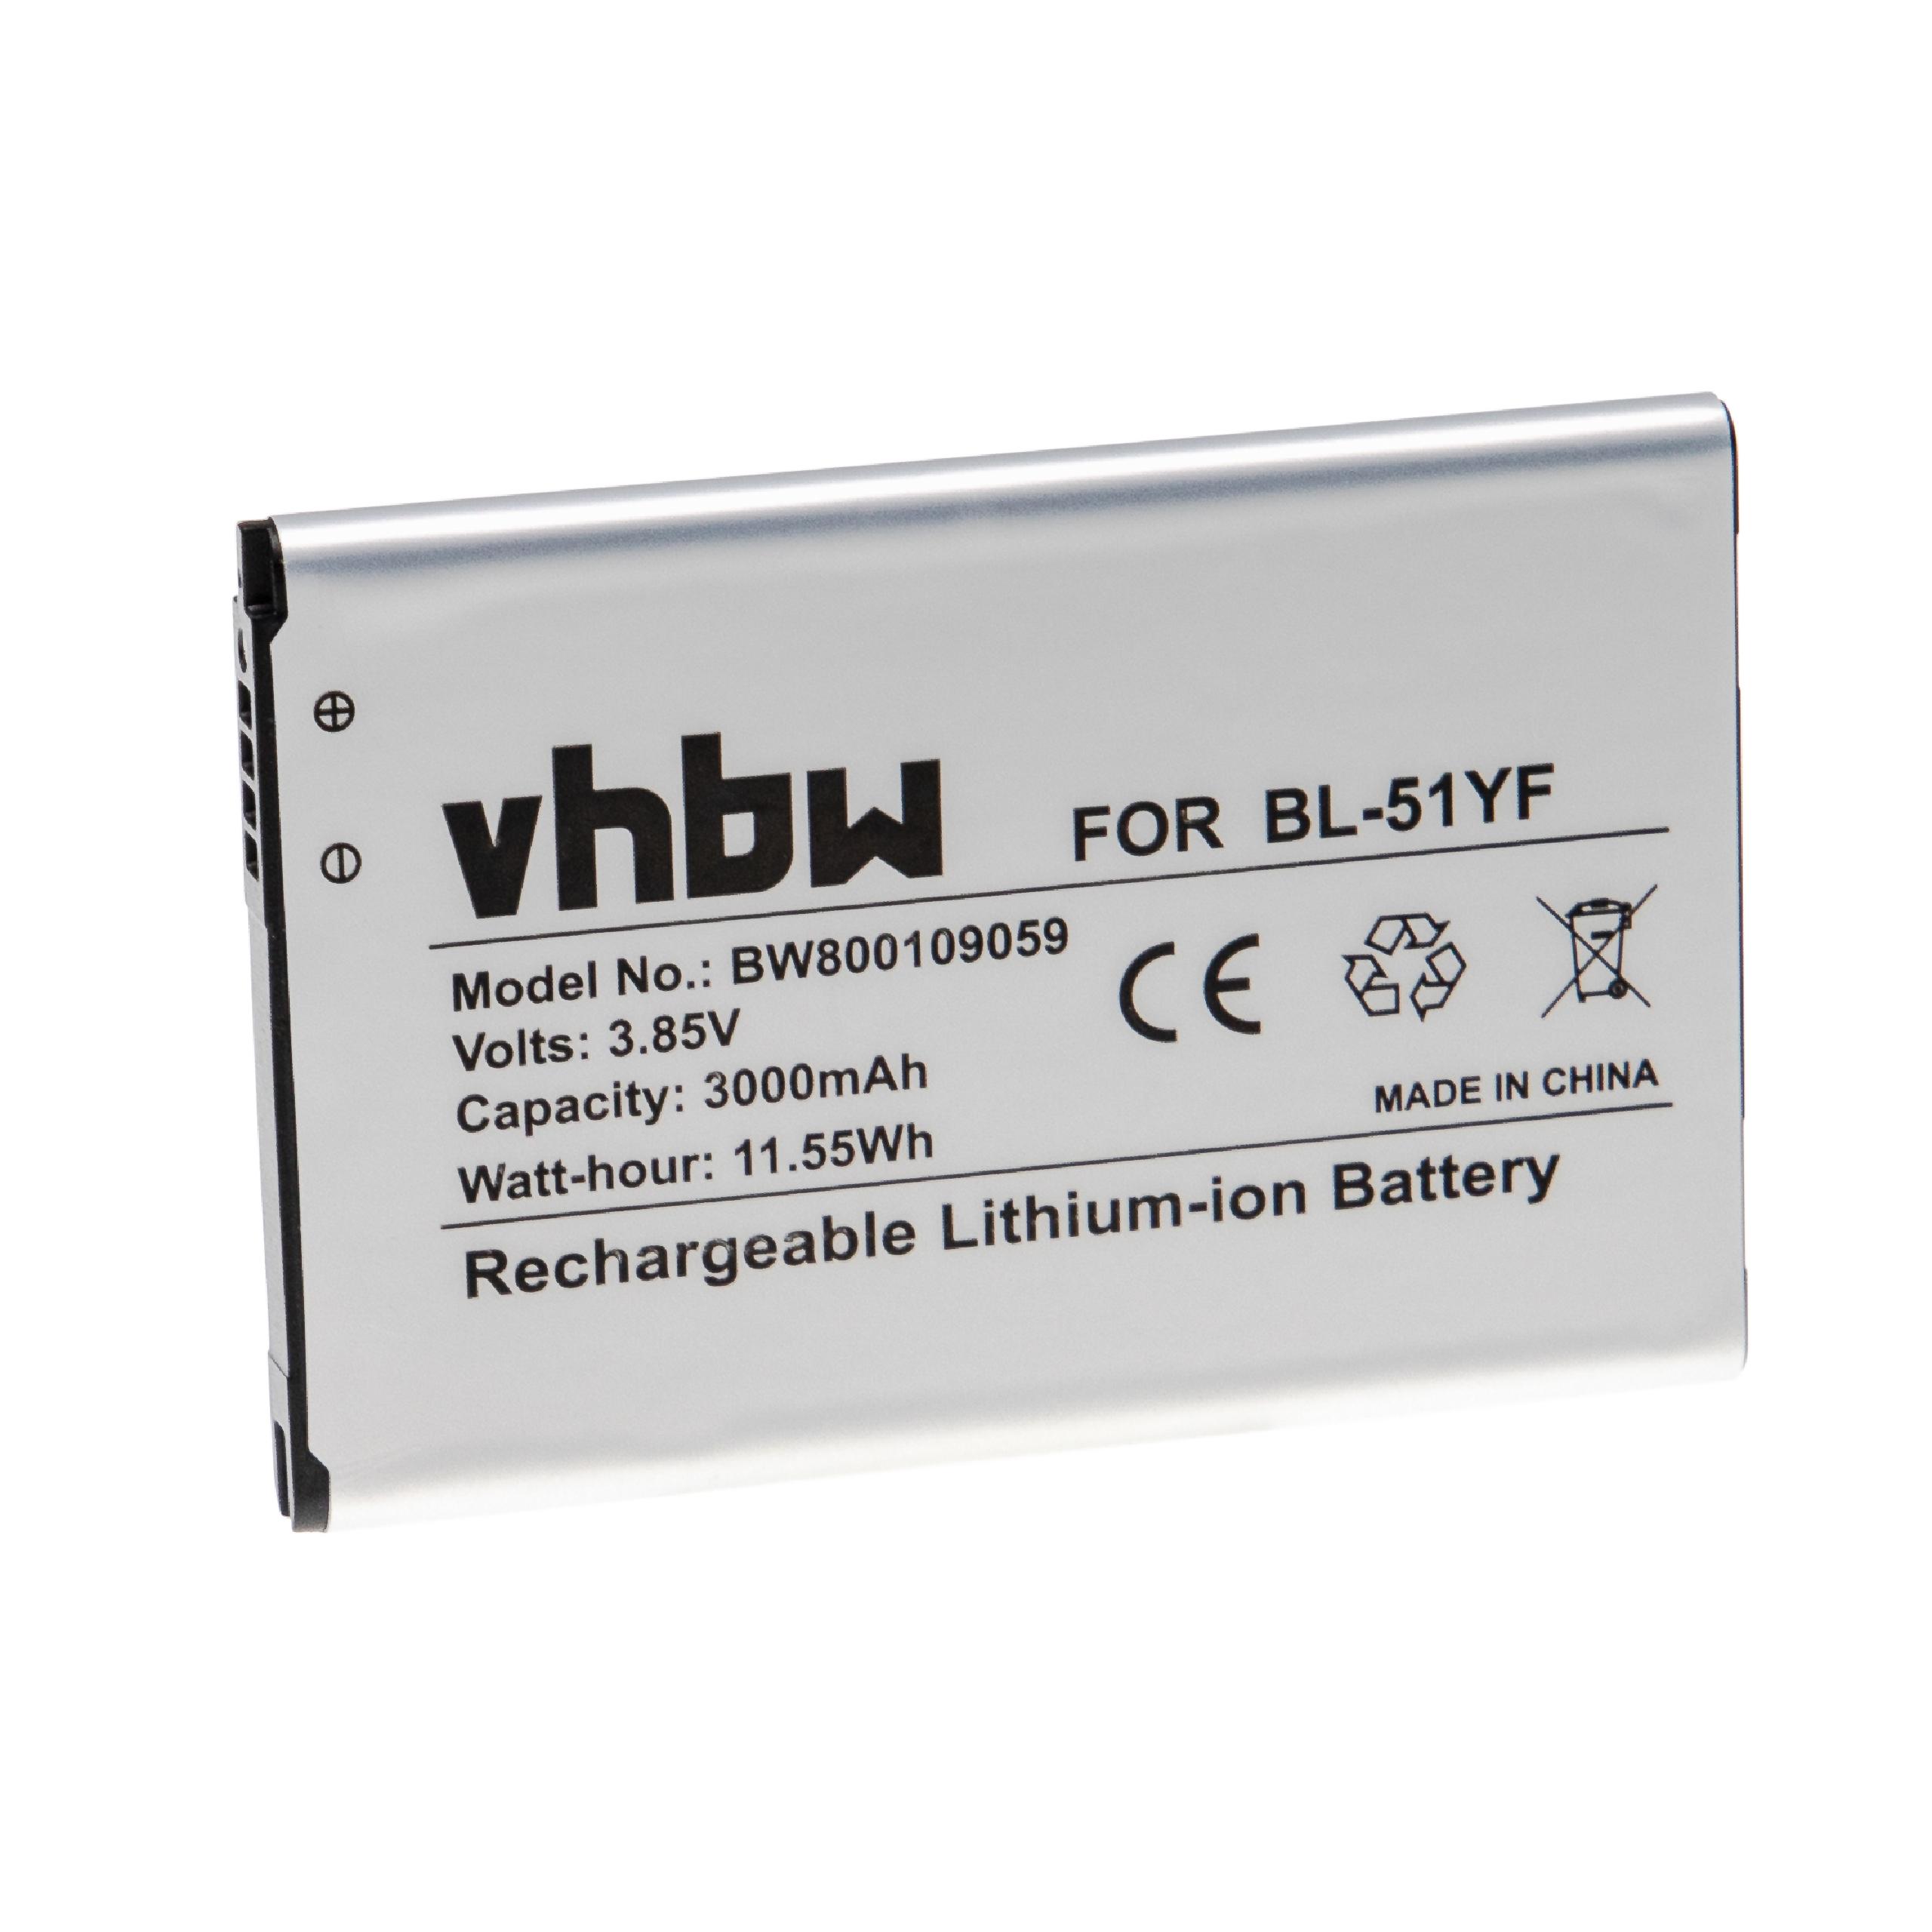 Batterie remplace LG EAC62858501, BL-51YF pour téléphone portable - 3000mAh, 3,85V, Li-ion